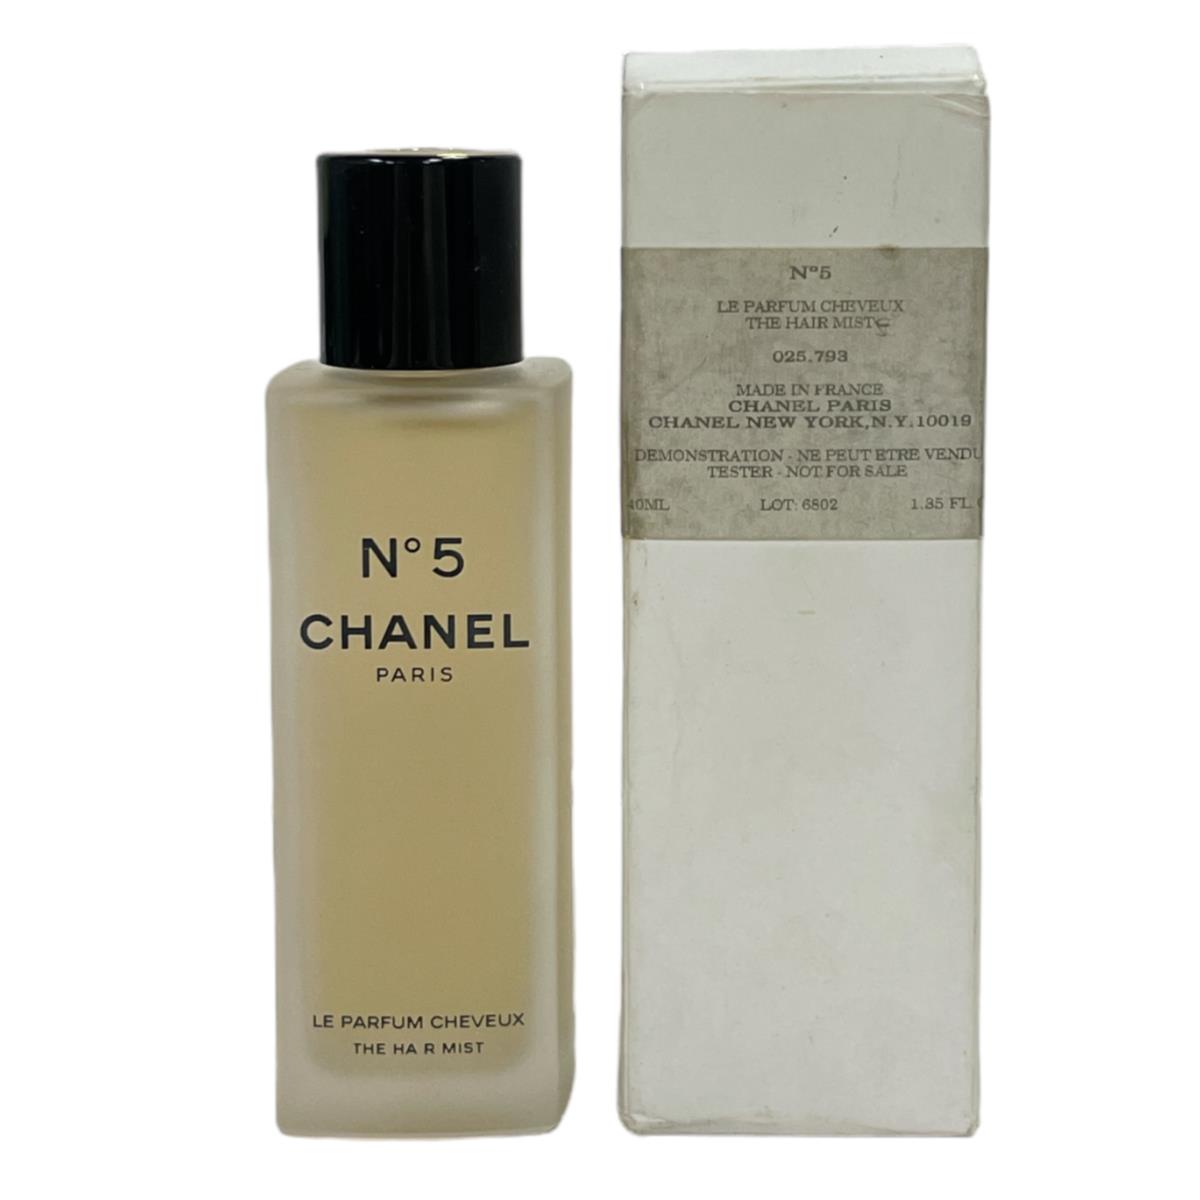 Chanel N 5 Perfumed Hair Mist Spray For Women 40ml/1.35fl.oz Formula